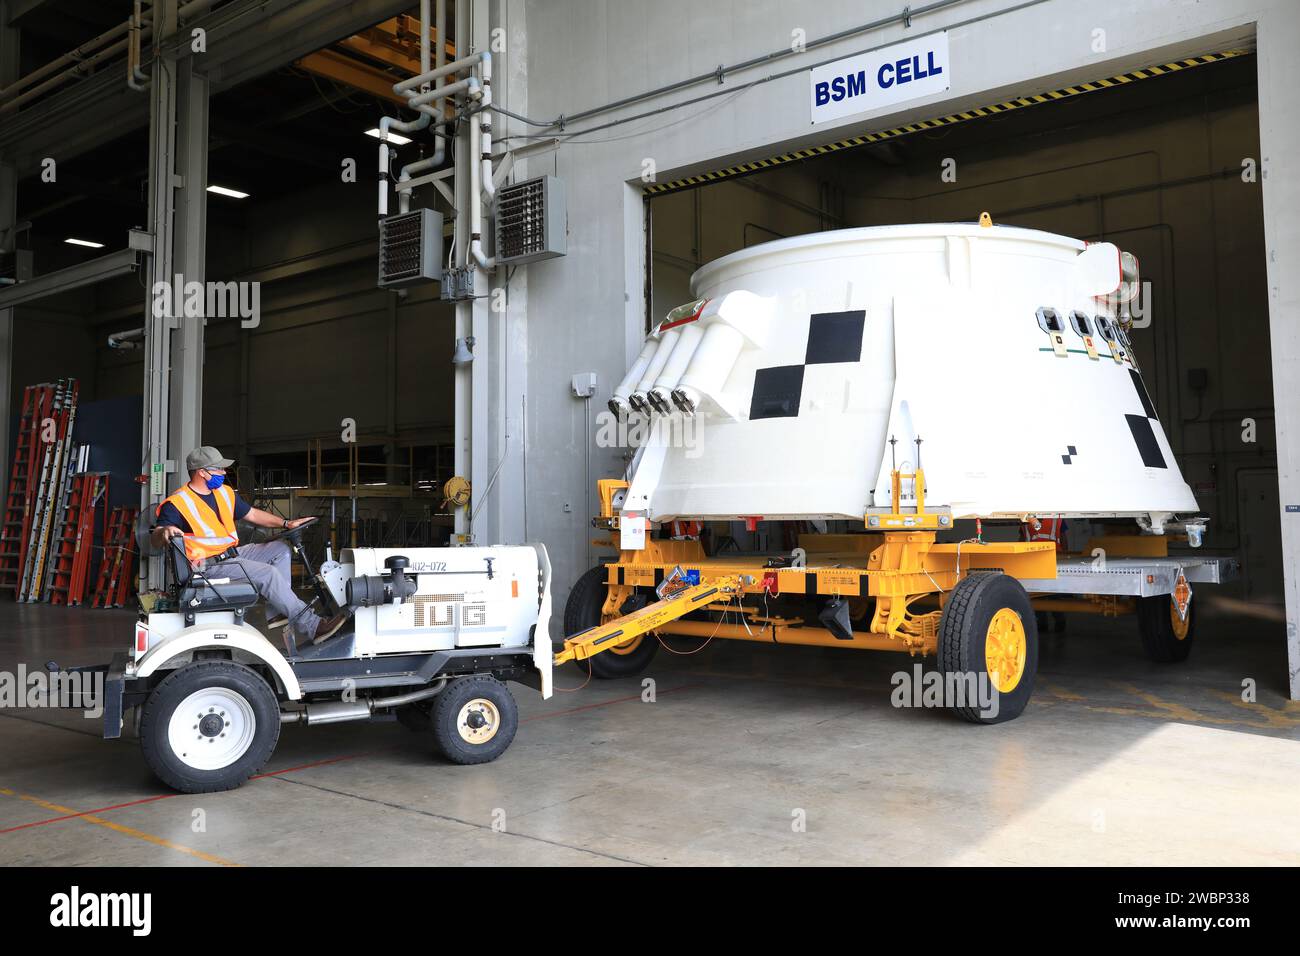 Innerhalb der Booster Fabrication Facility im Kennedy Space Center der NASA in Florida werden die Artemis i Achterrocke für die beiden Solid-Rocket Booster der Raumfahrzeugrakete SLS (Space Launch System) der Agentur für ihren Umzug in die Rotation, Processing and Surge Facility (RPSF) am 9. Juni 2020 vorbereitet. In der Ansicht ist die linke hintere Schürzenbaugruppe an einem beweglichen Fahrzeug befestigt und aus einer Prüfzelle entfernt. Die hinteren Röcke wurden von Northrop Grumman renoviert. Sie beherbergen das Schubvektorsteuersystem, das 70 Prozent der Lenkung während des ersten Aufstiegs der SLS-Rakete steuert. Die Segmente verbleiben im Stockfoto